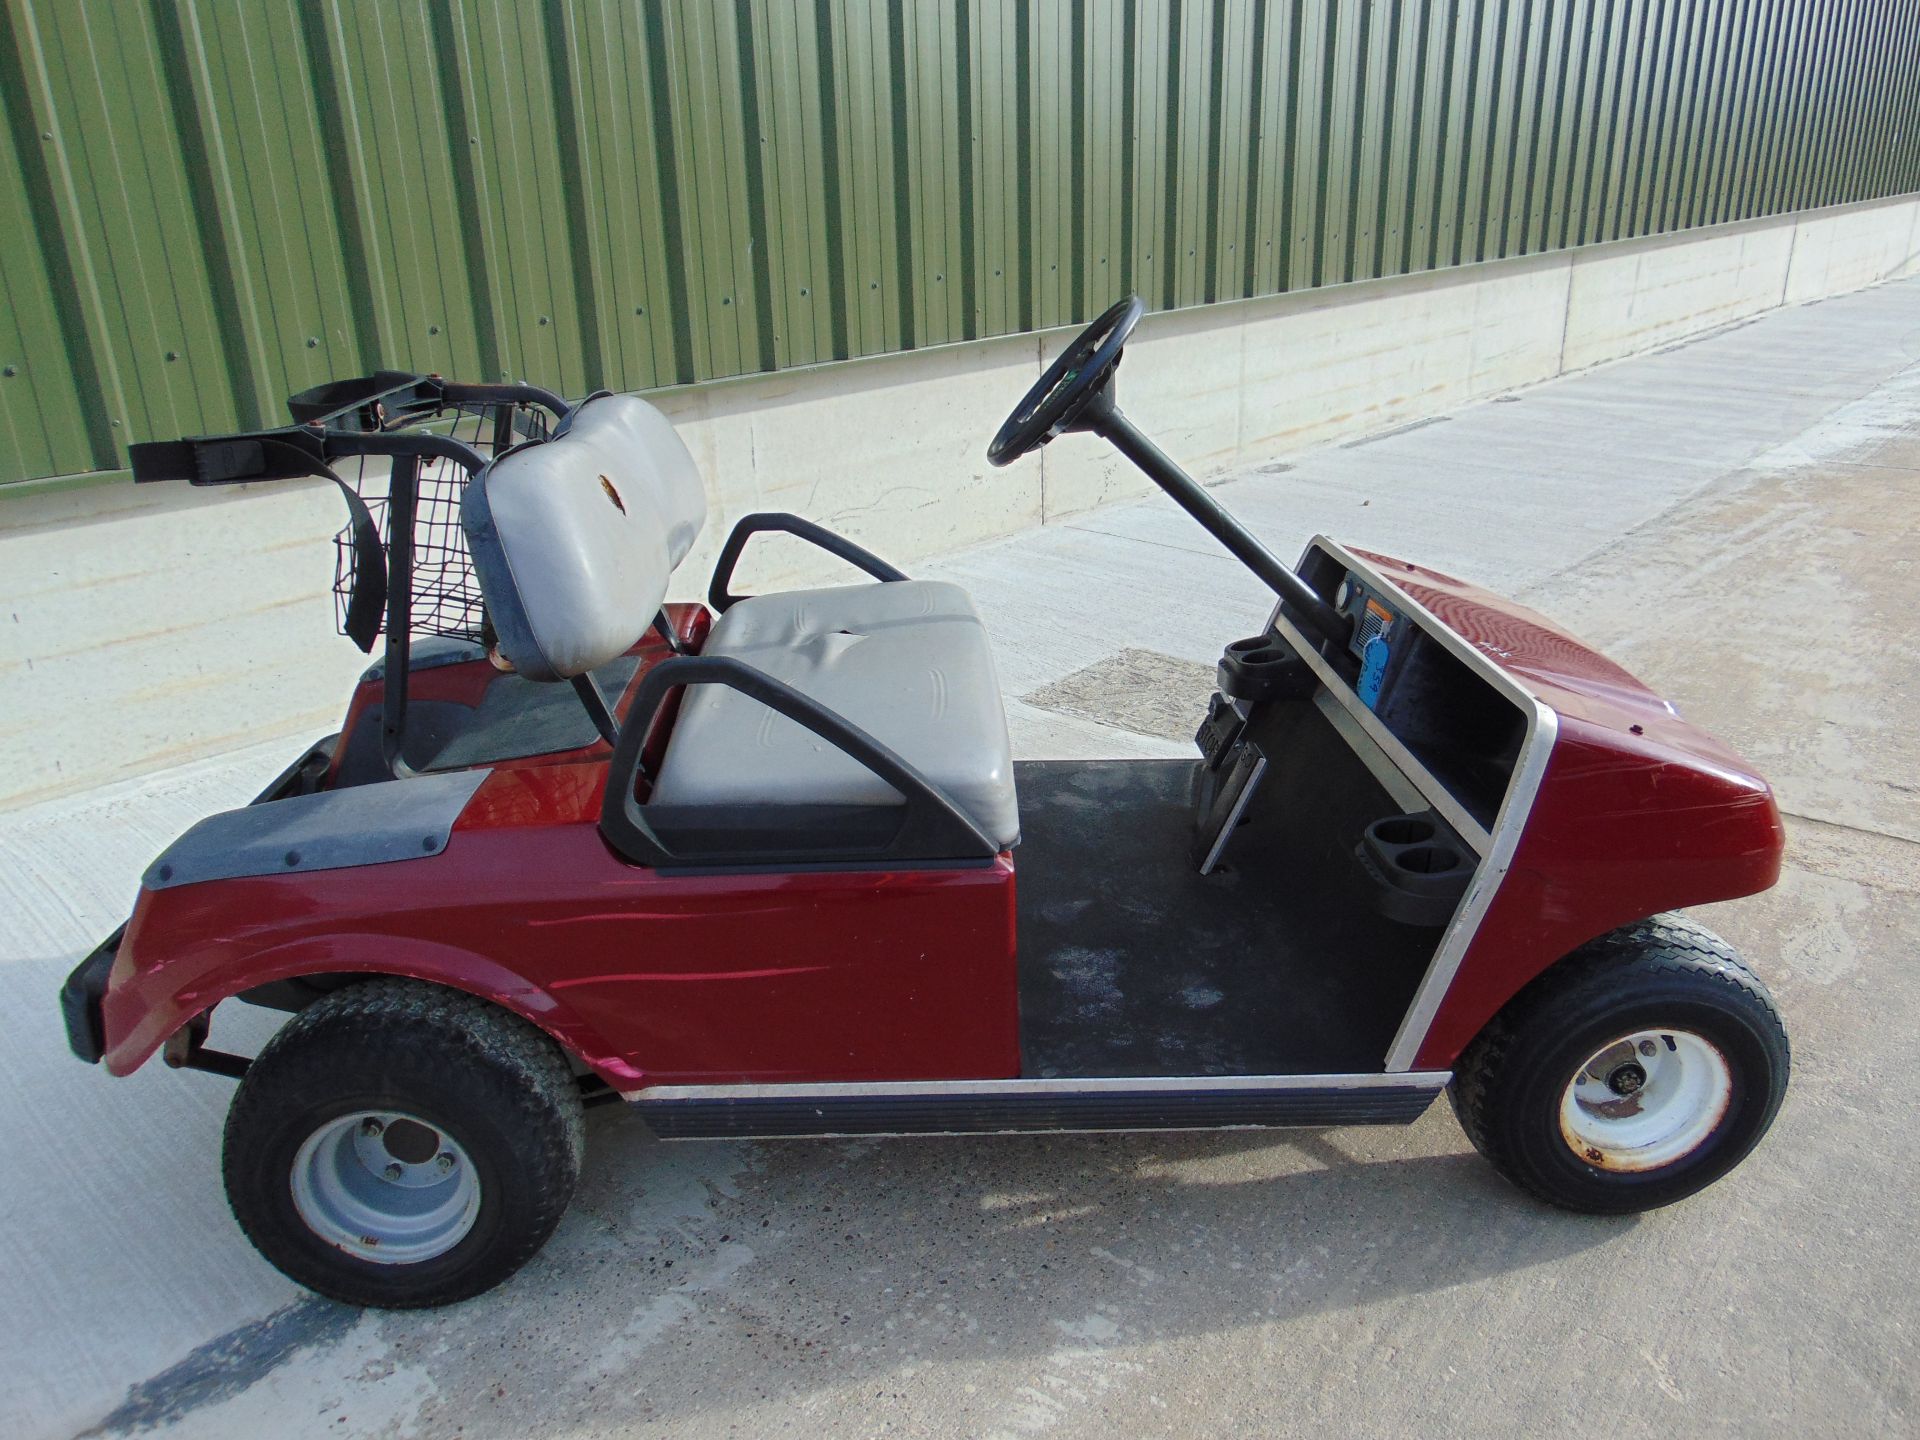 Club Car Golf Cart - Petrol Engine - Image 2 of 17